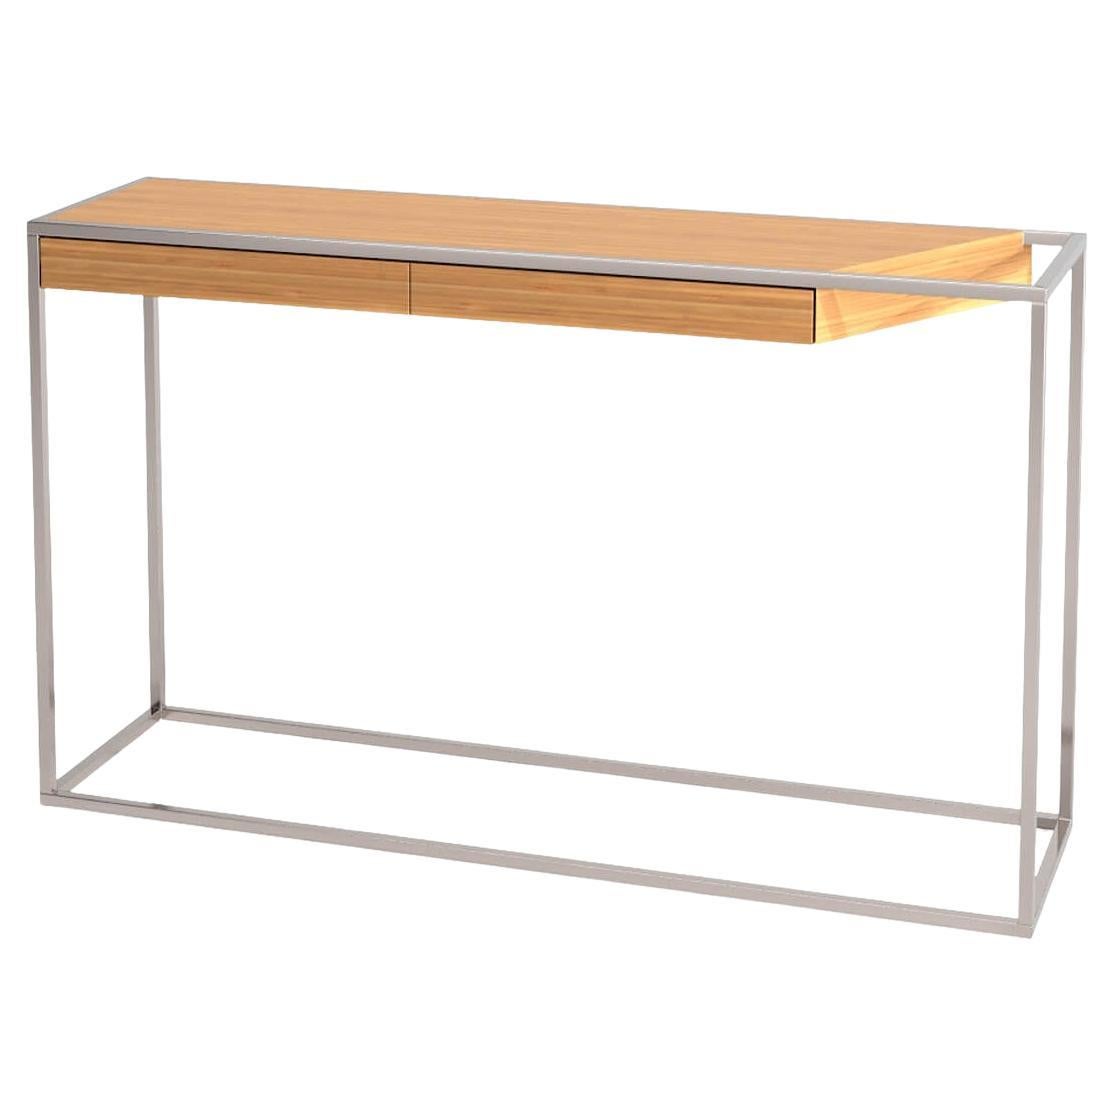 Table console rectangulaire moderne et minimaliste en bois de chêne et acier inoxydable brossé